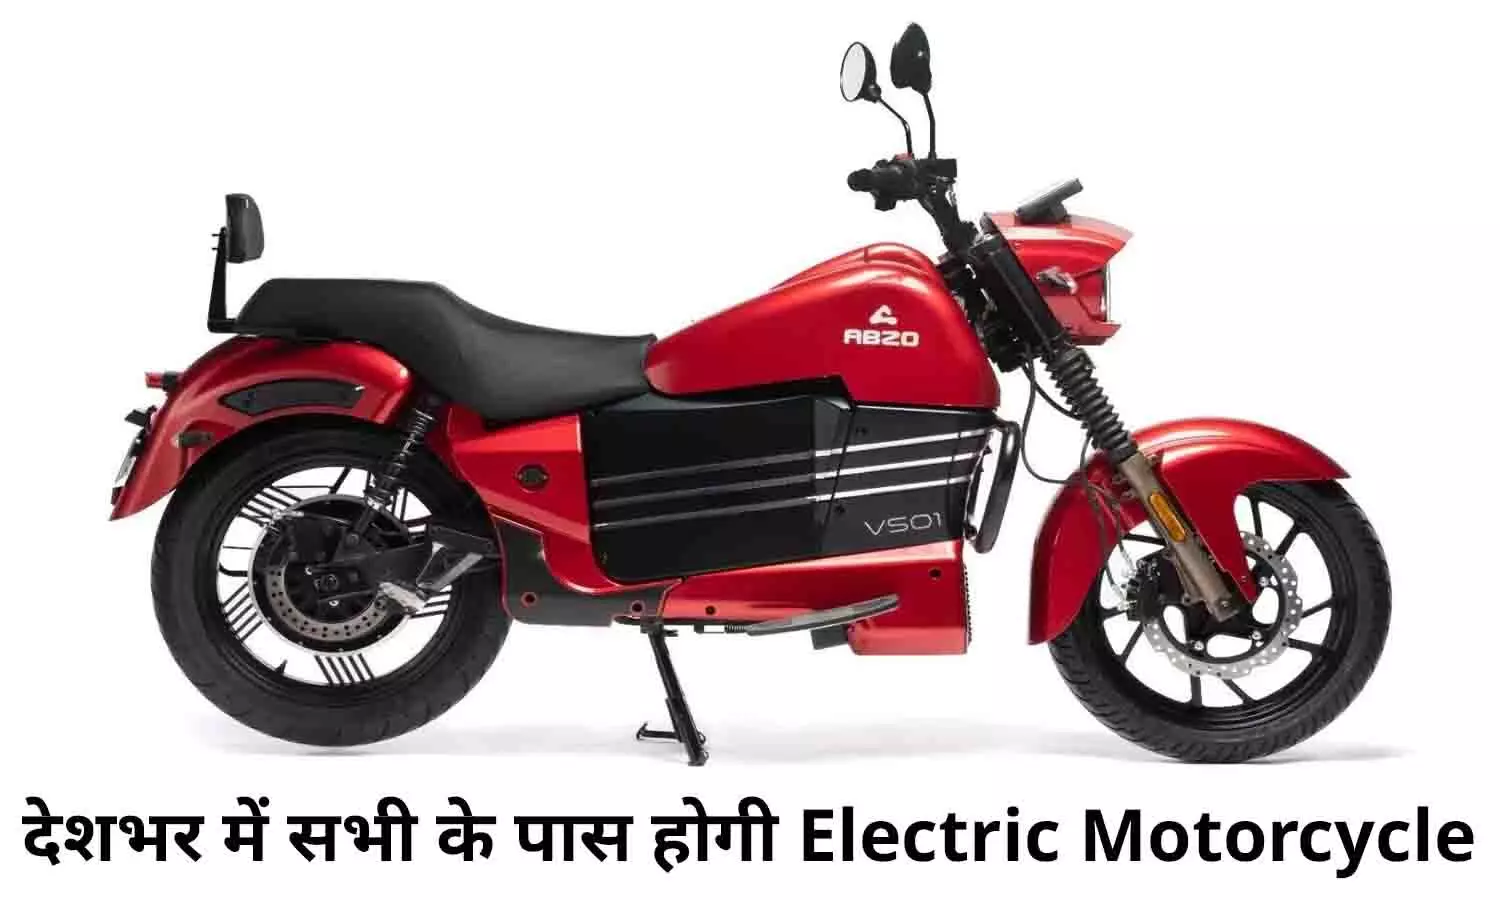 ABZO Bike Price: बड़ा ऐलान! देशभर में सभी के पास होगी Electric Motorcycle, एक बार करें चार्ज और भगाएं 180 KM, खरीदने के लिए लगी भीड